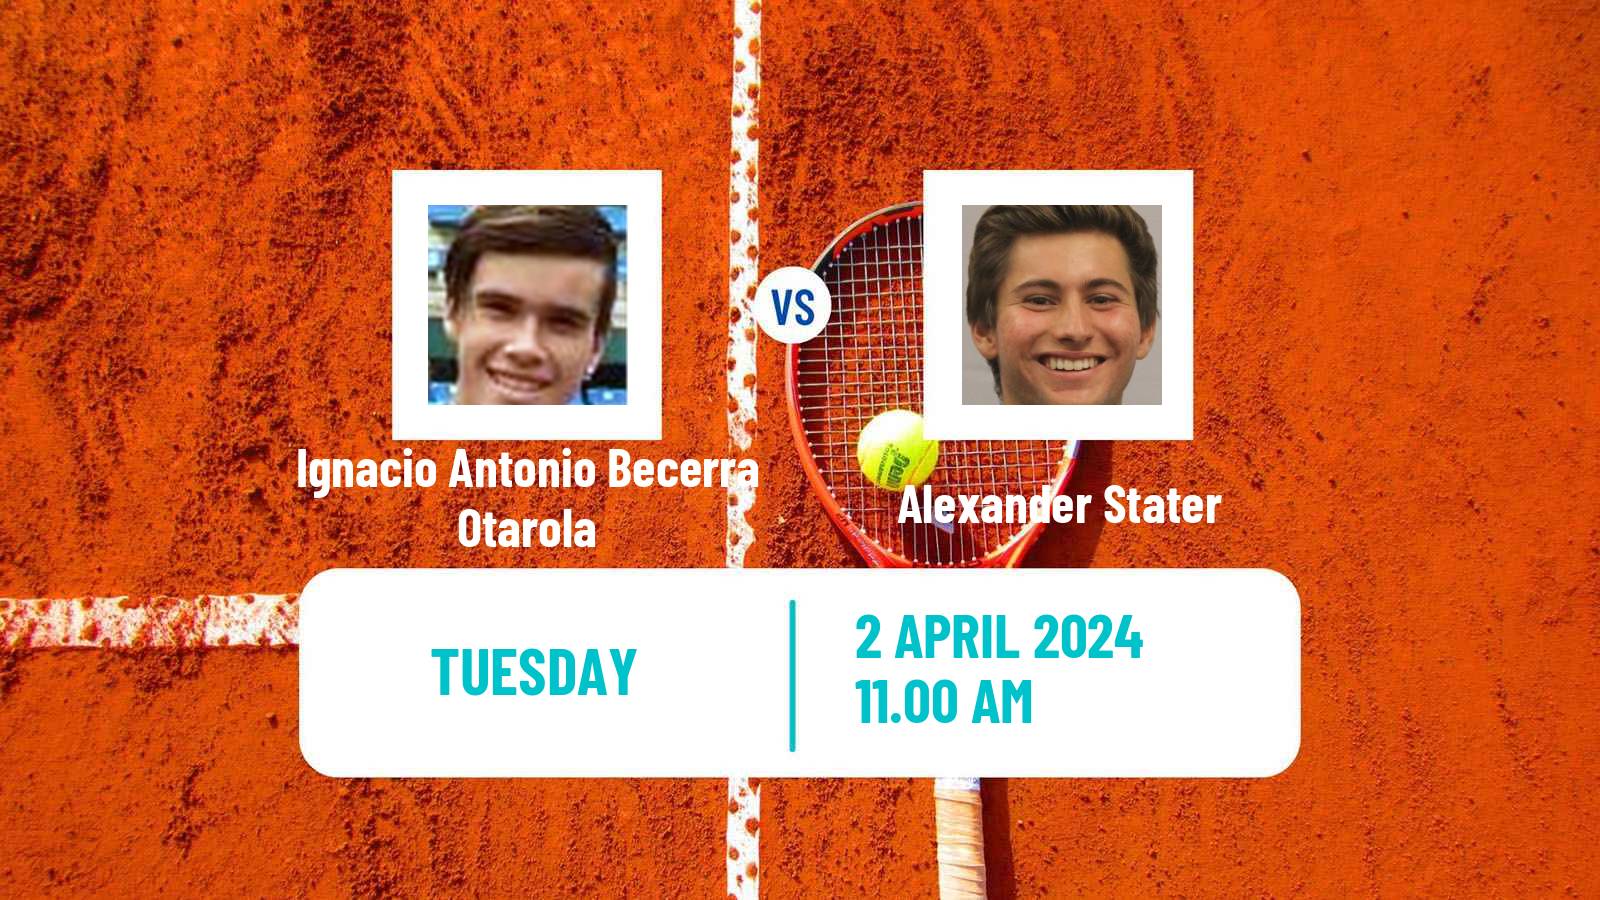 Tennis ITF M15 Bragado 2 Men Ignacio Antonio Becerra Otarola - Alexander Stater